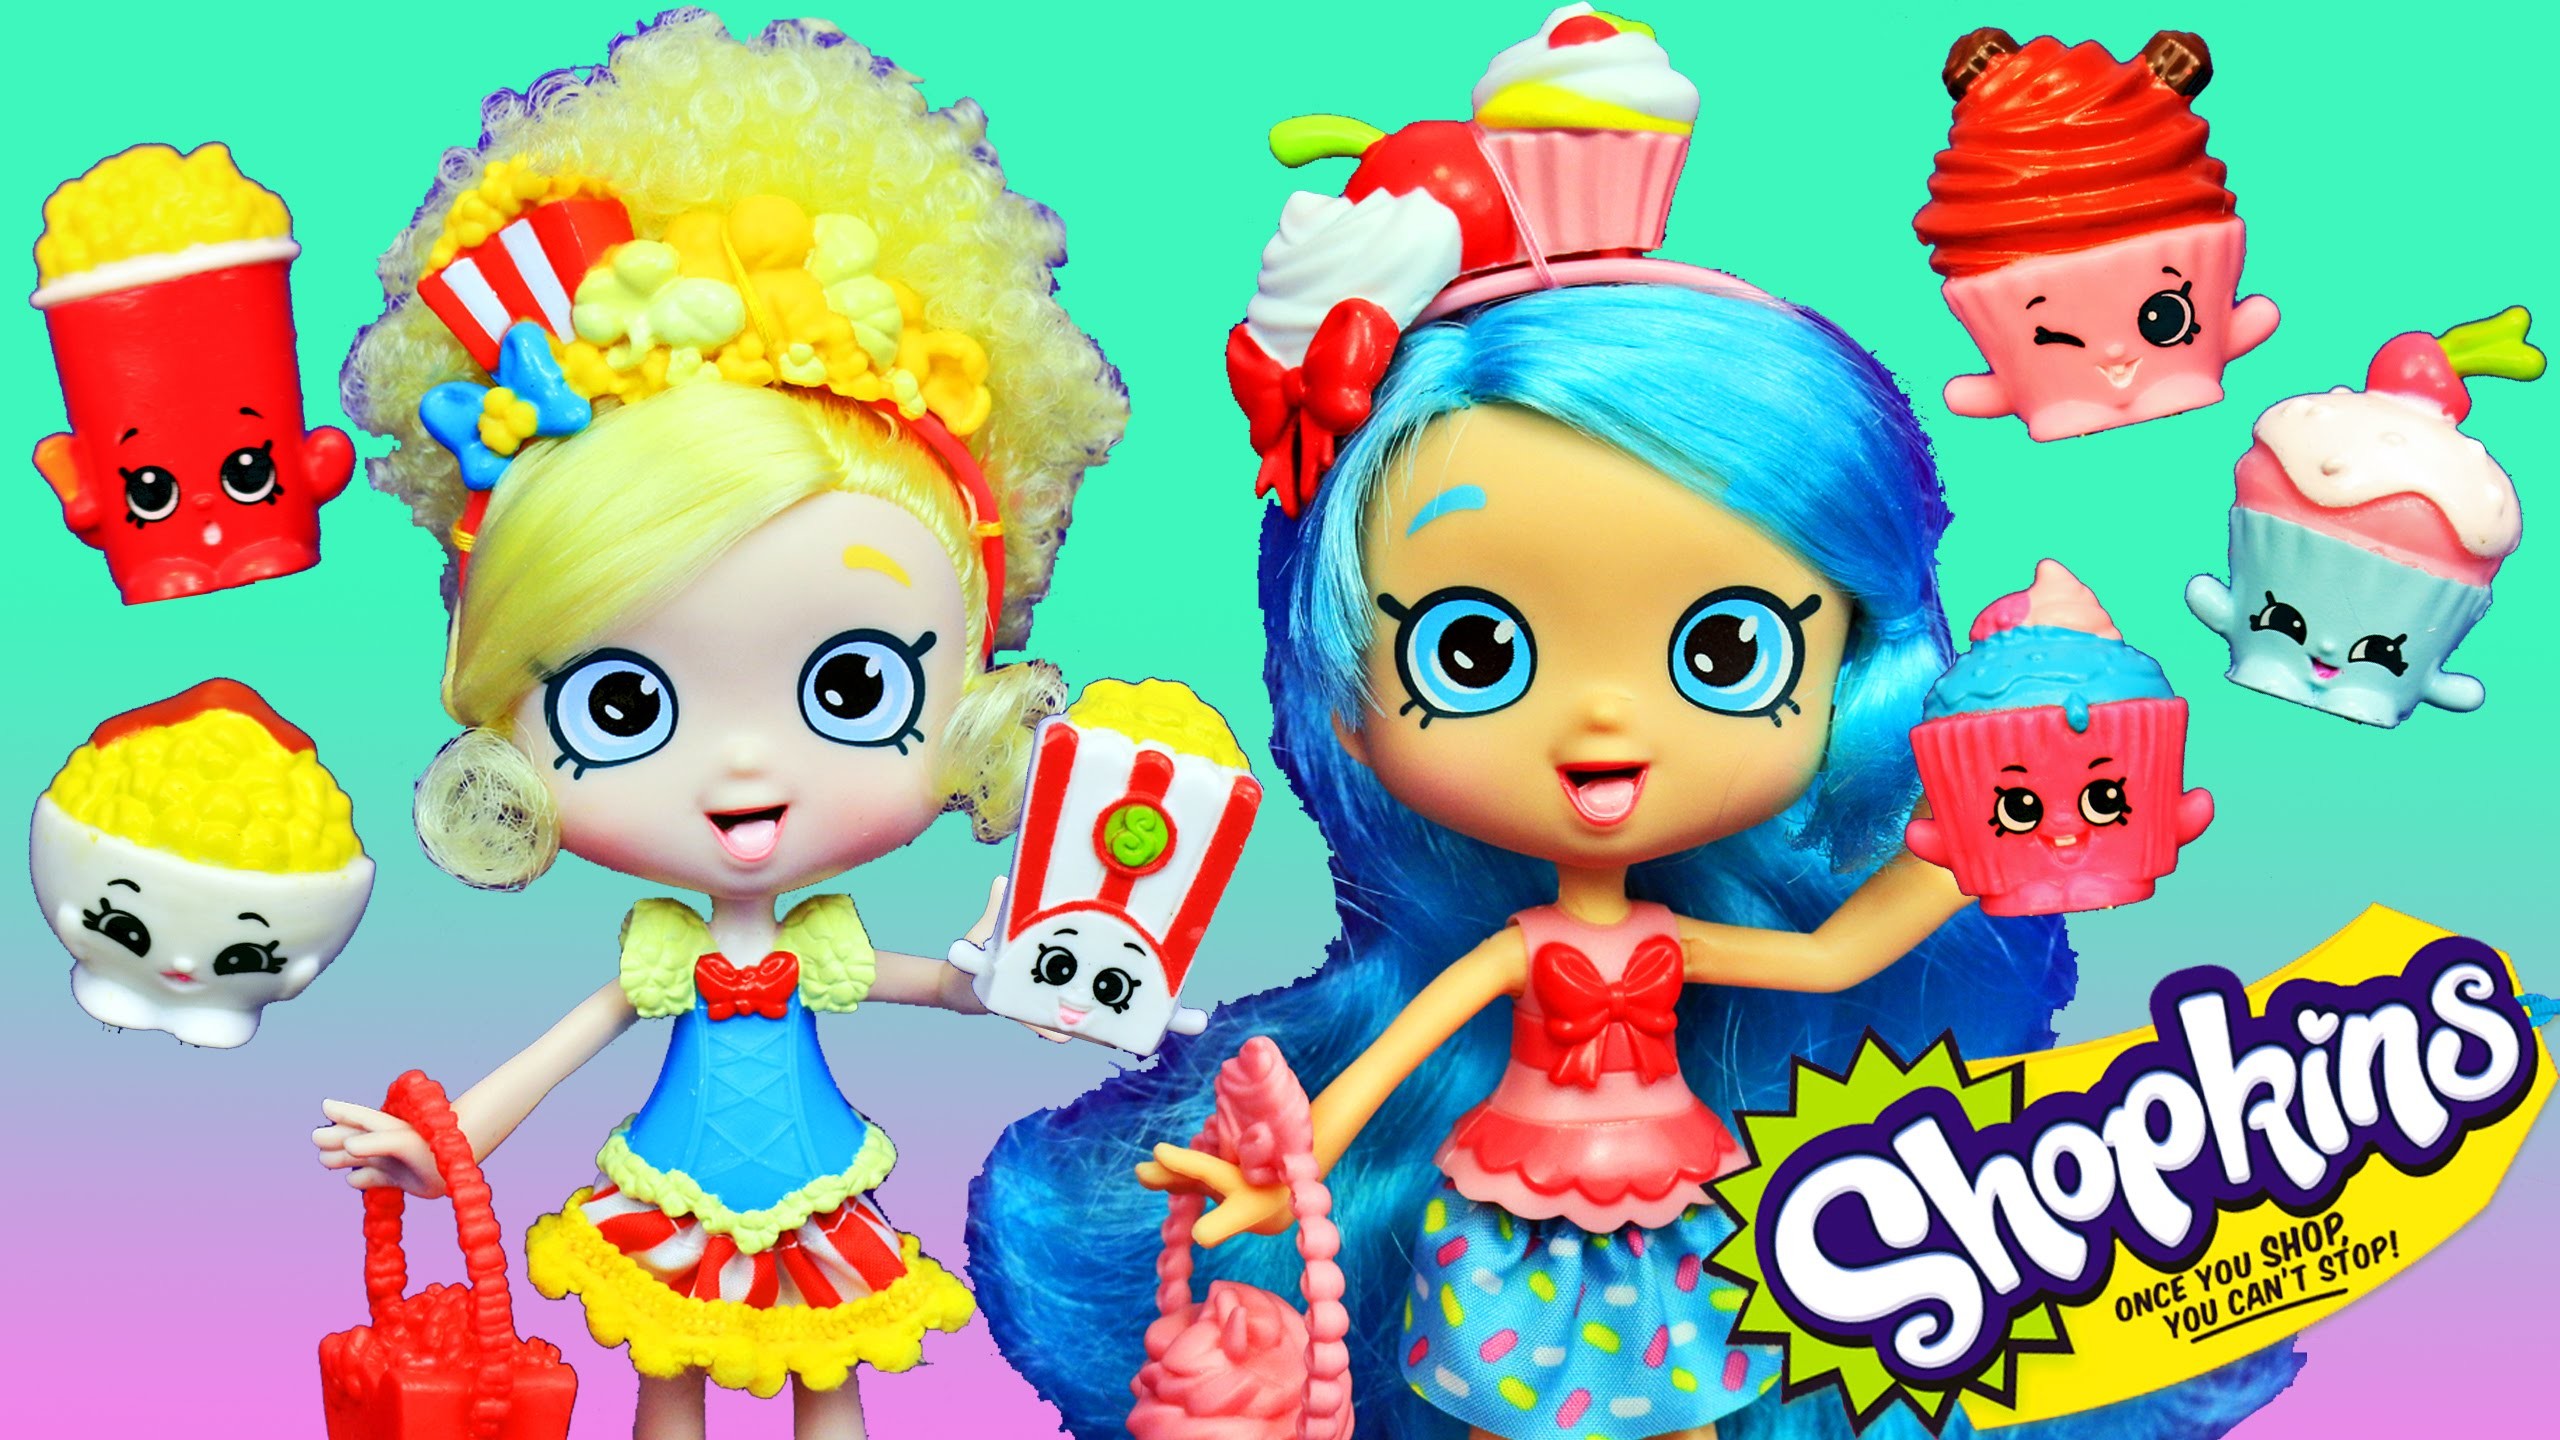 NEW SHOPKINS DOLLS Shoppies Jessicake Popette Season 4 New Toys Peppa Pig Elsa – YouTube